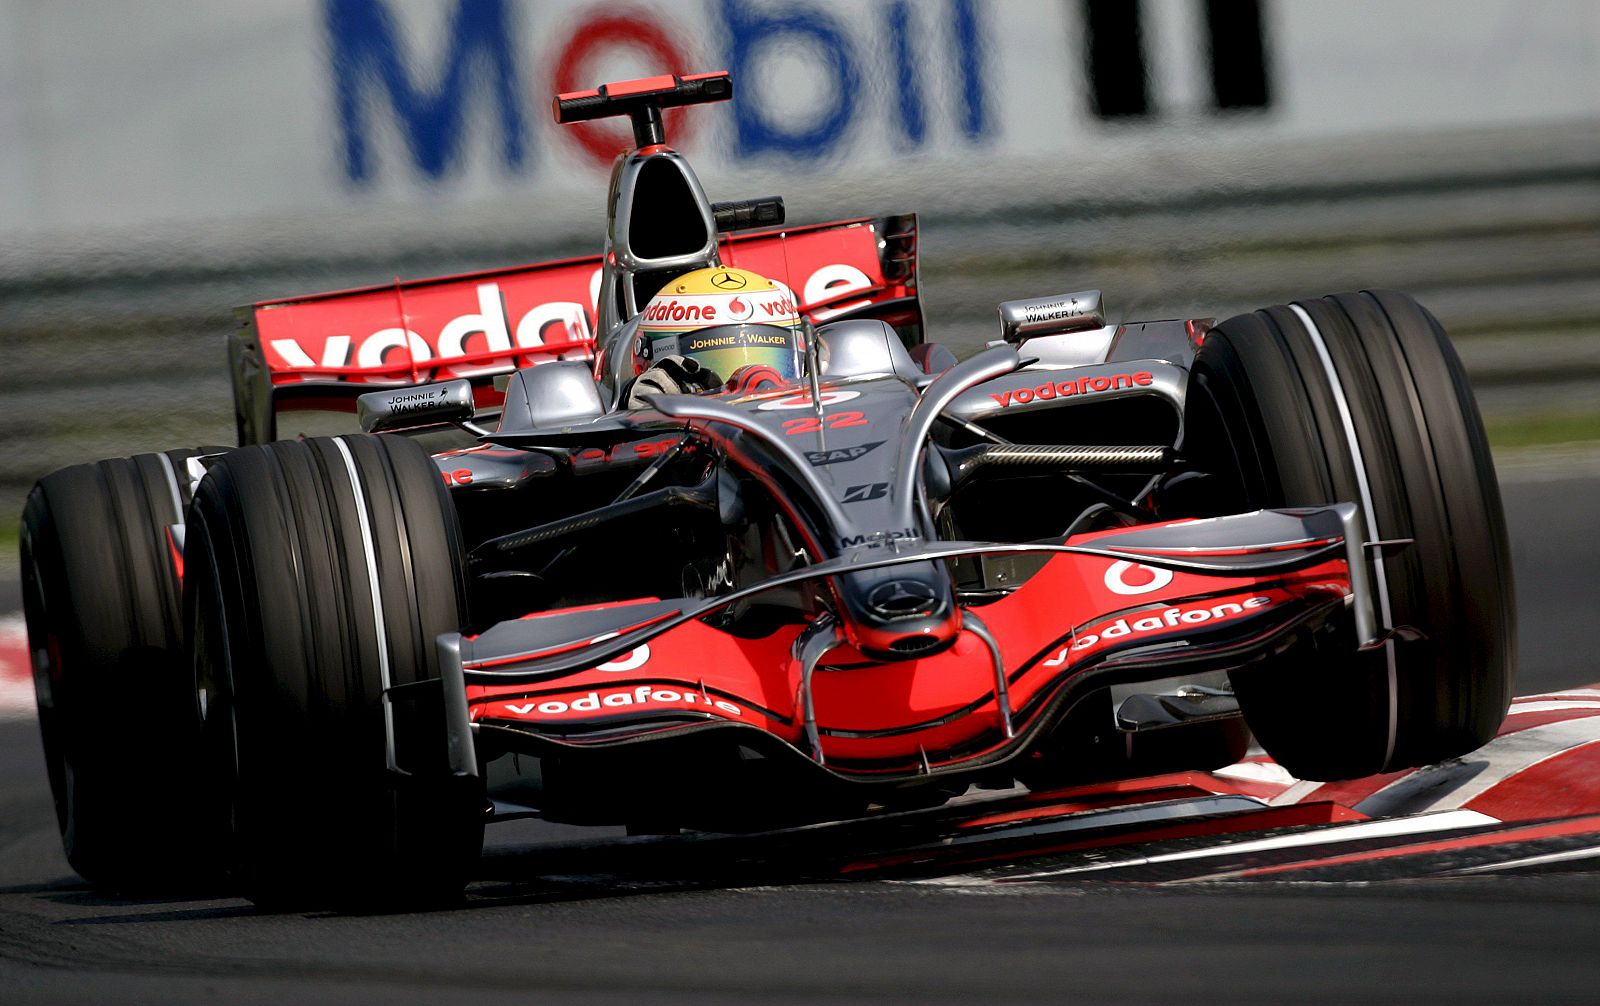 El piloto británico de Fórmula Uno Lewis Hamilton del equipo McLaren Mercedes conduce su monoplaza en el Gran Premio de Hungría de Fórmula Uno.